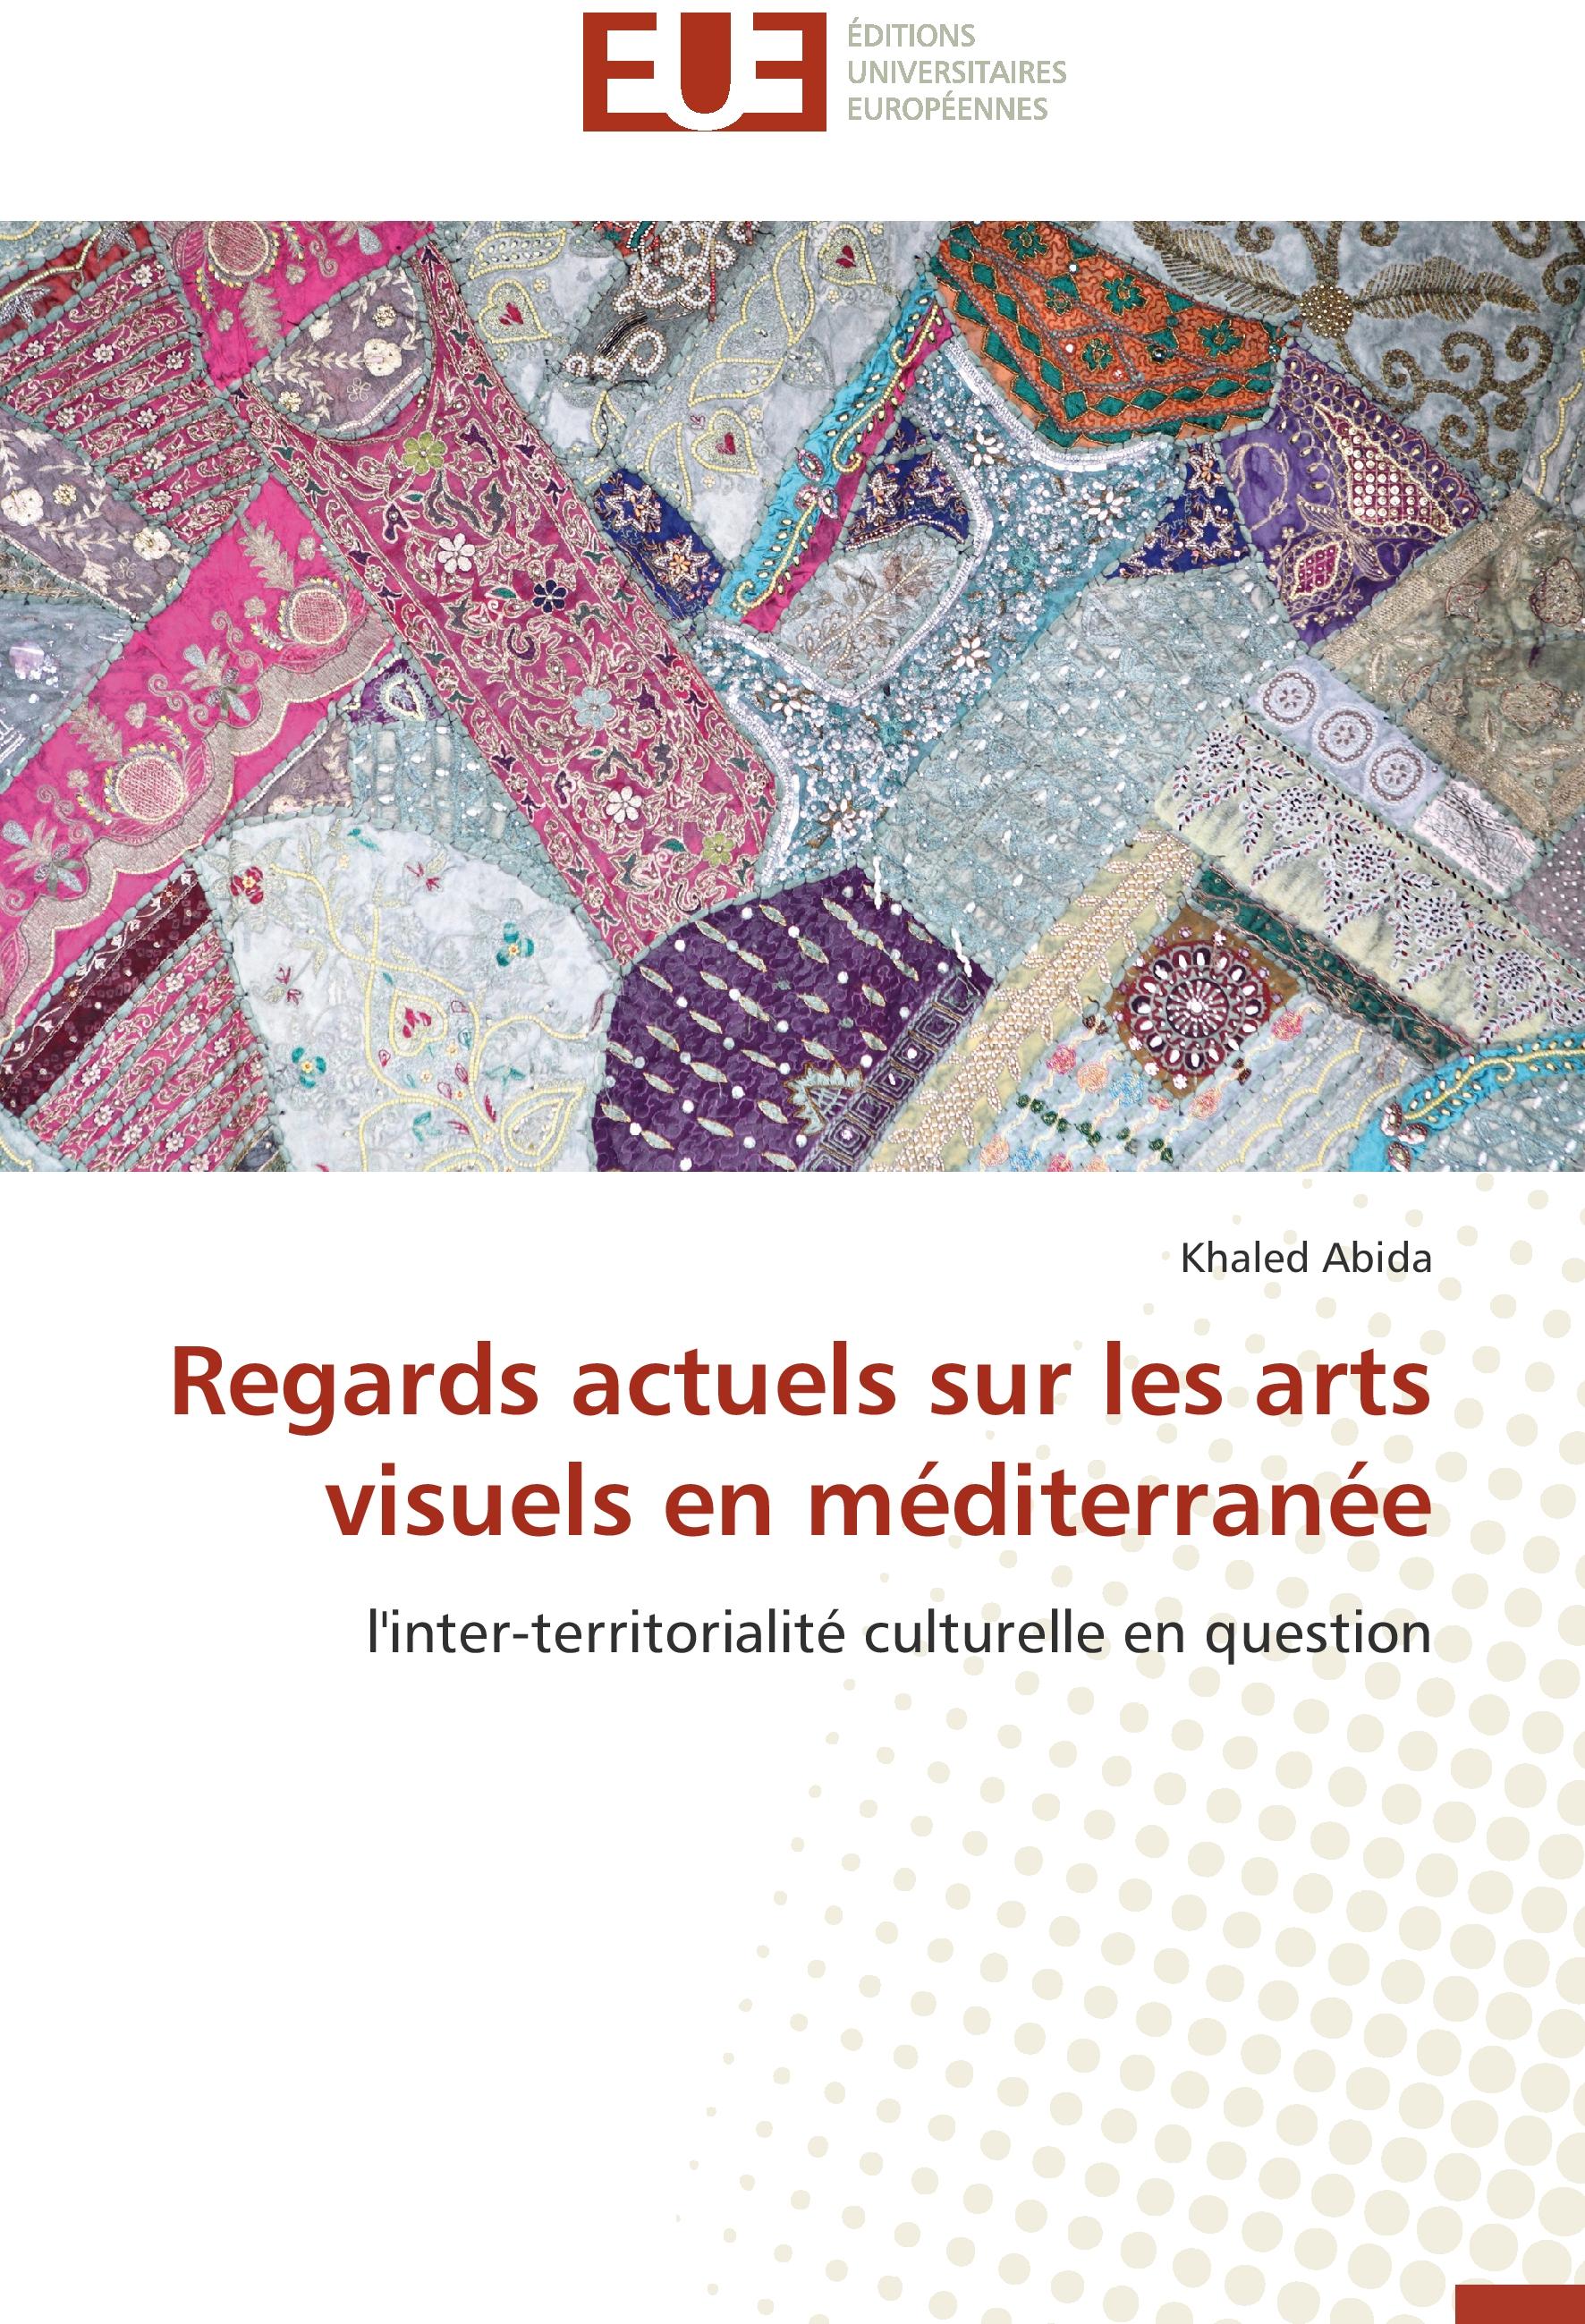 Regards actuels sur les arts visuels en méditerranée - Khaled Abida